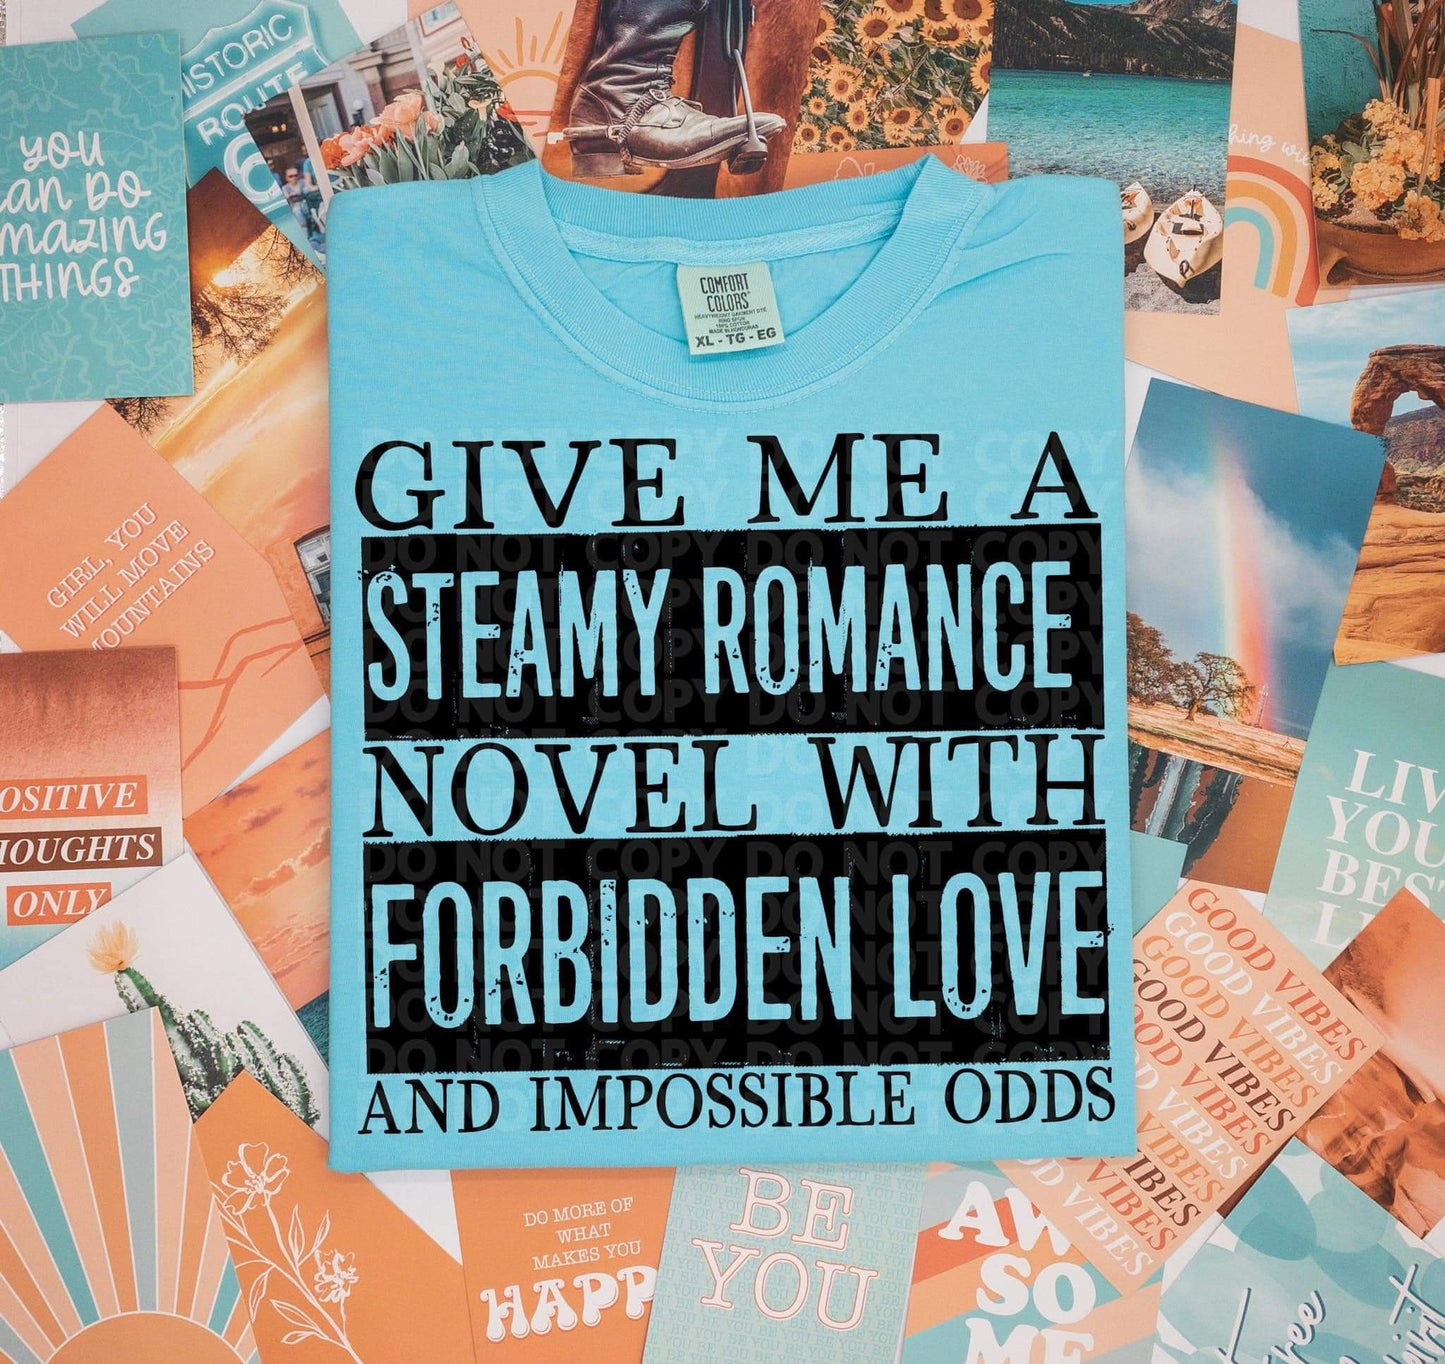 Steamy romance